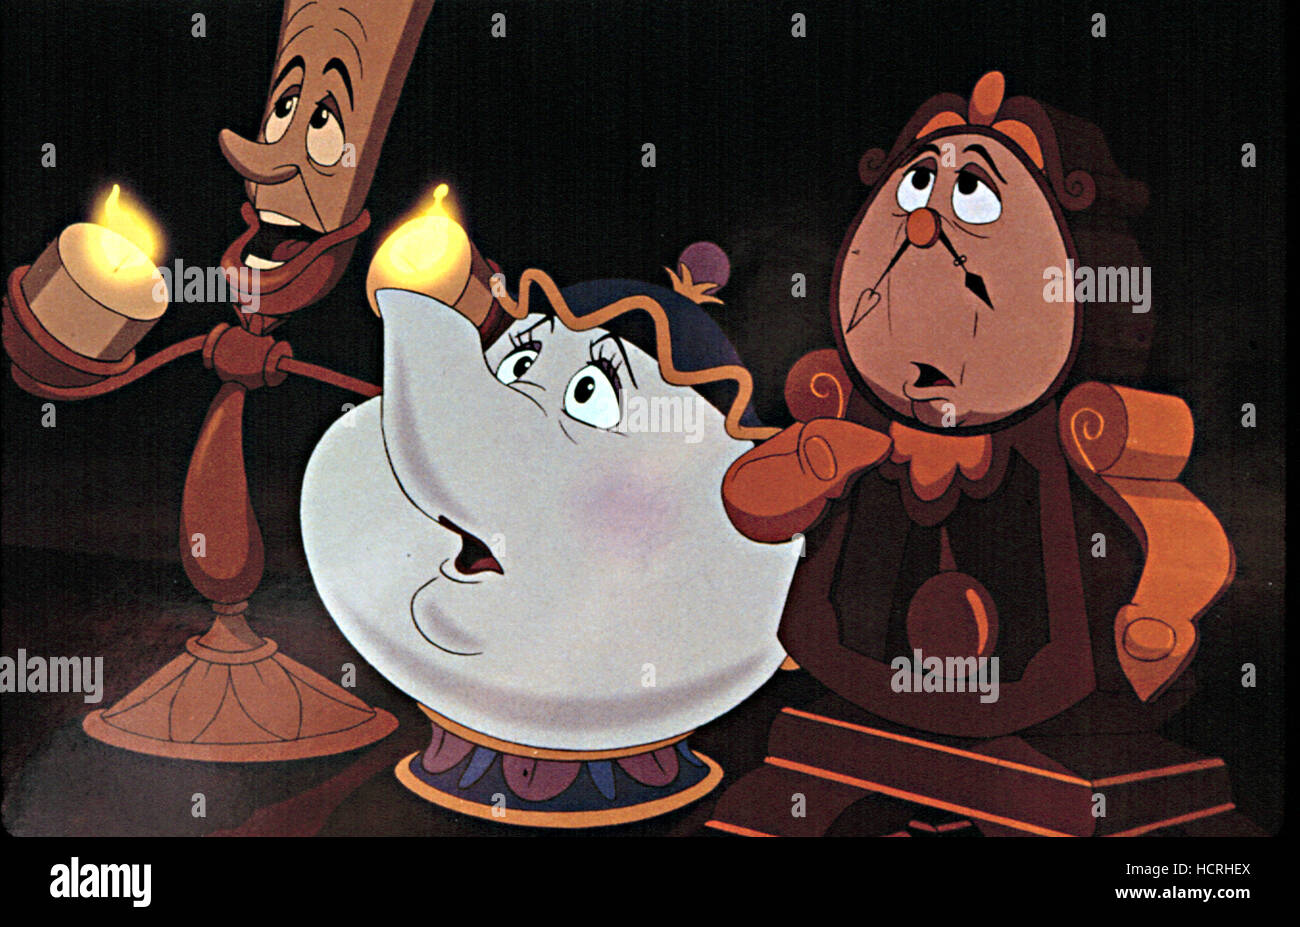 La bella e la bestia, Disney Animation, Lumiere (candelabro), Mrs